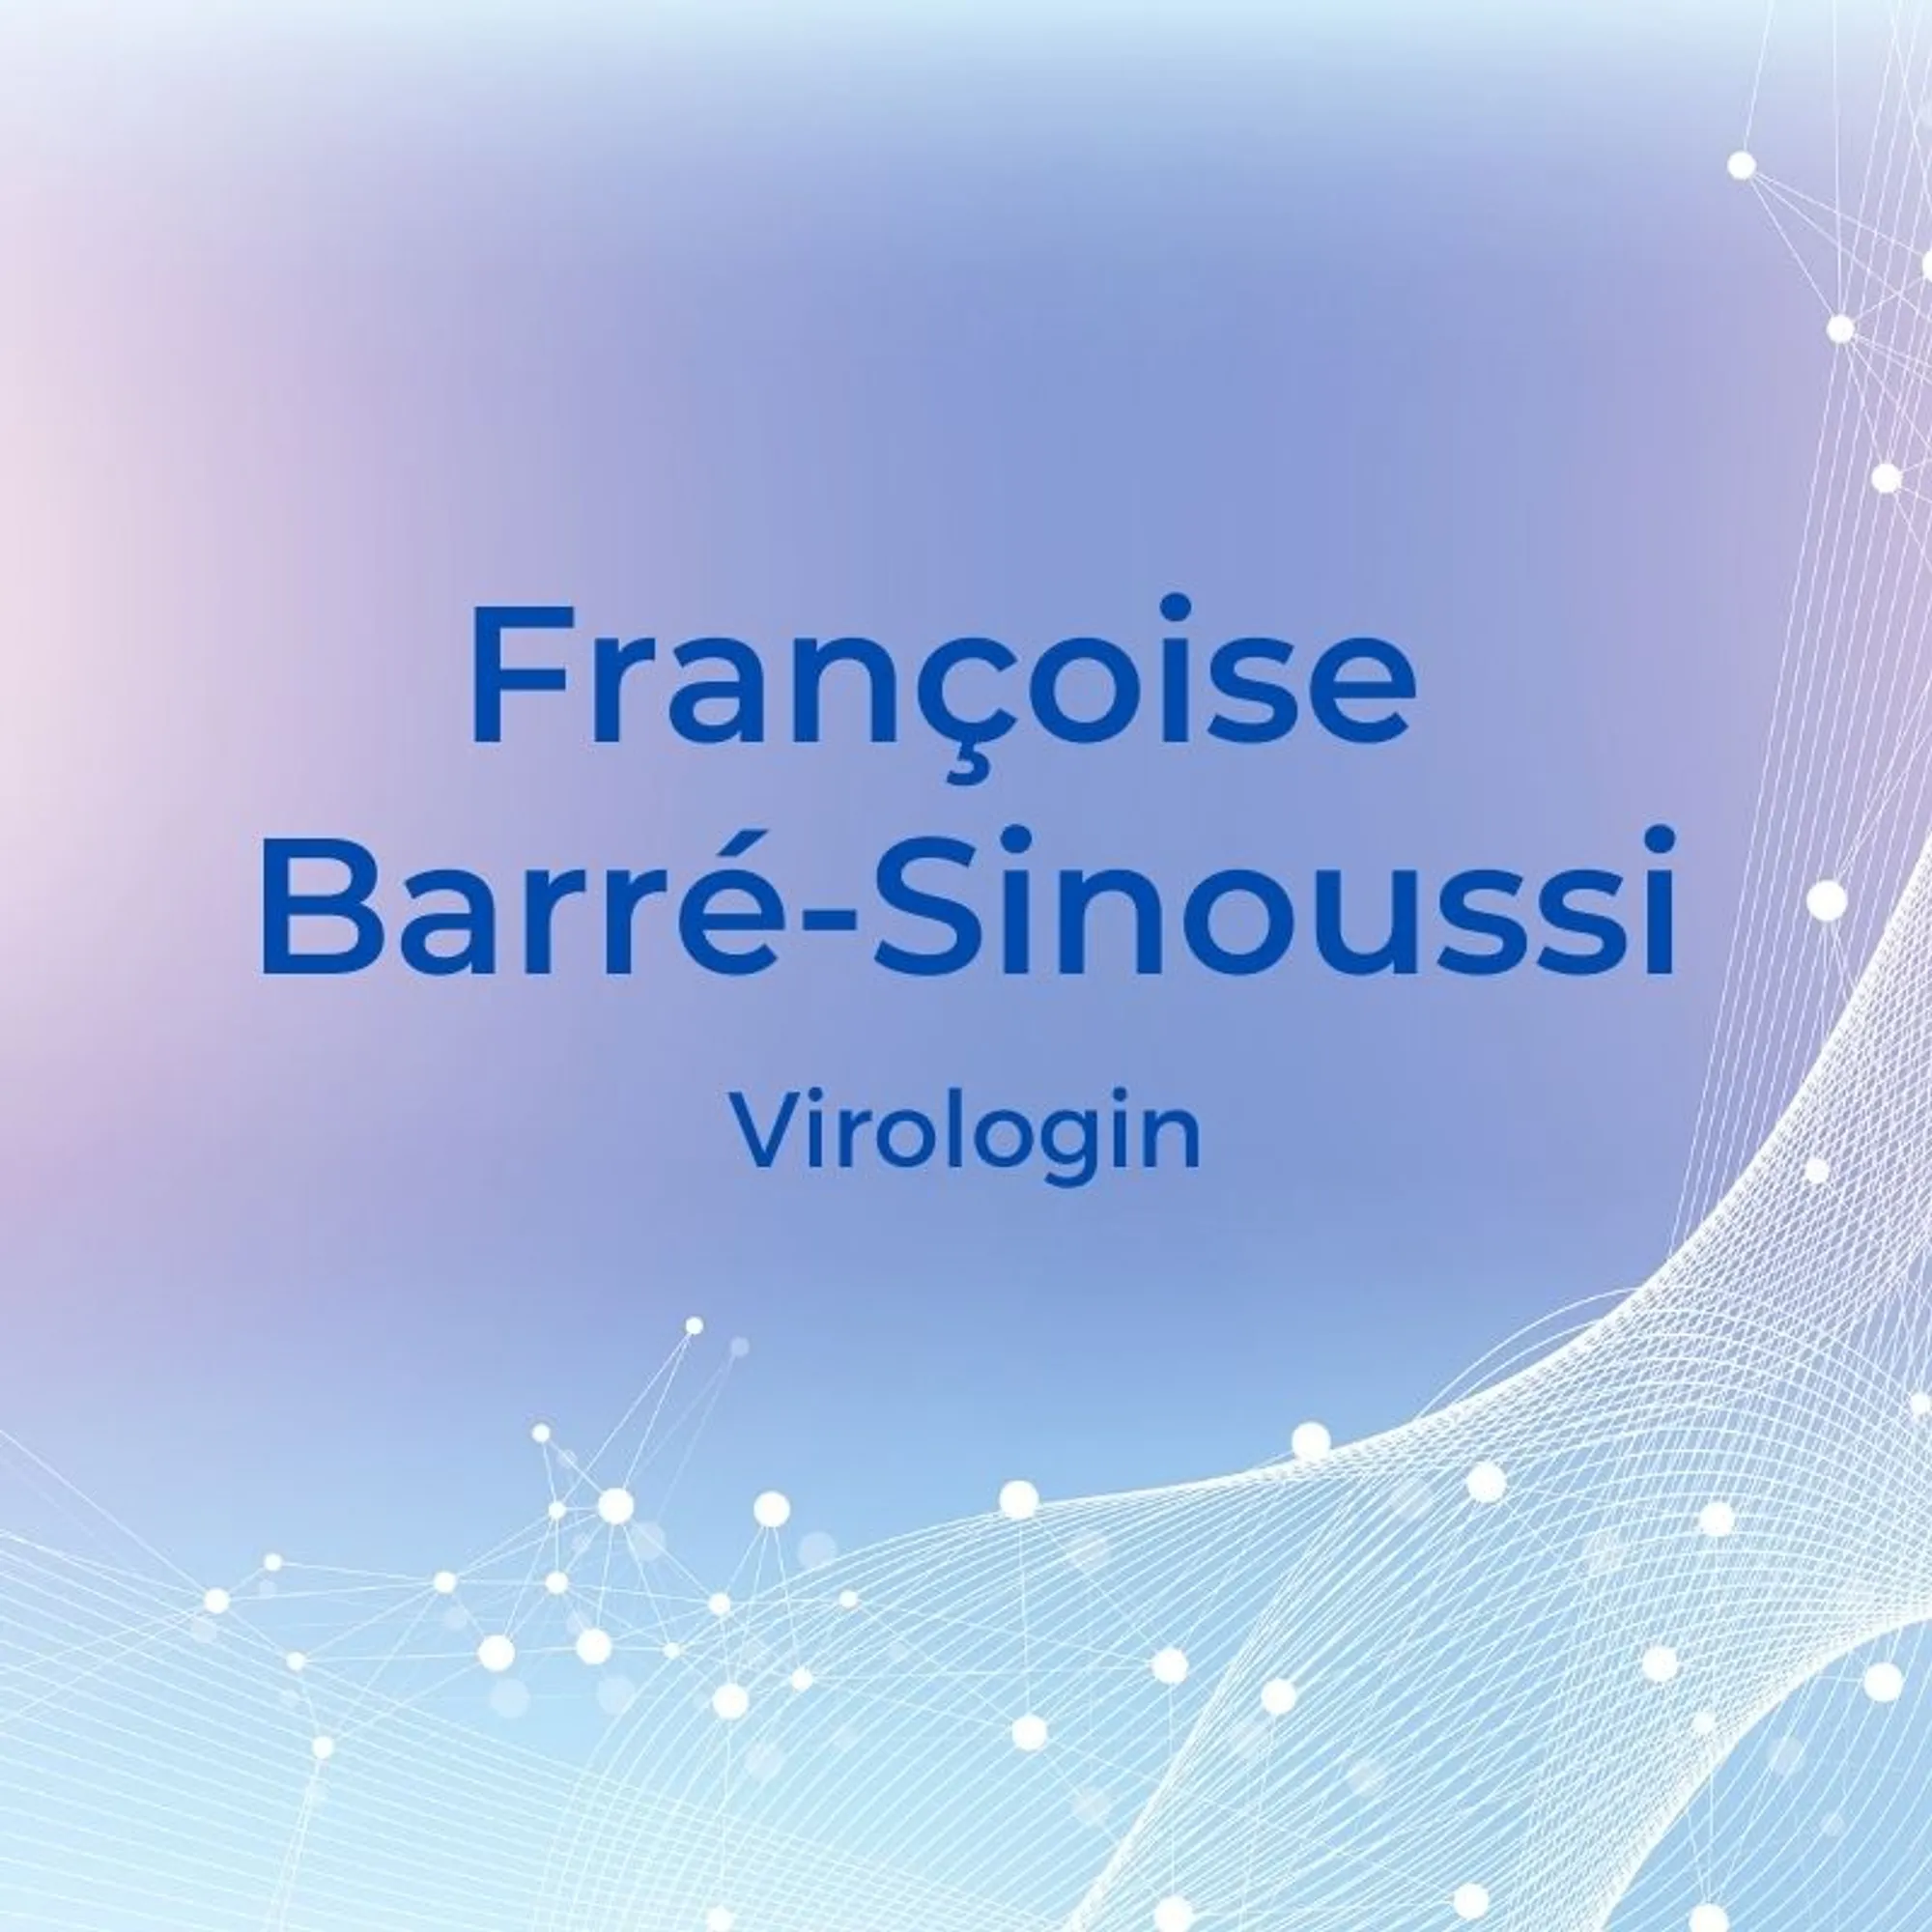 4. Françoise Barré-Sinoussi (*1947) – VirologinDiese Pariserin Françoise Barré-Sinoussi hat tatsächlich den HI-Virus entdeckt. Schon im Jahr 1983 stellte sie fest, dass es einen Zusammenhang zwischen der Infektion mit dem Virus und der sich damals zur Pandemie entwickelten Krankheit gab. Auf Basis ihrer Grundlagenforschung konnte man Medikamente entwickeln, die die AIDS-spezifischen Symptome möglichst lange unterdrücken können. 2008 wurde Barré-Sinoussis Arbeit schließlich mit dem Nobelpreis honoriert.
